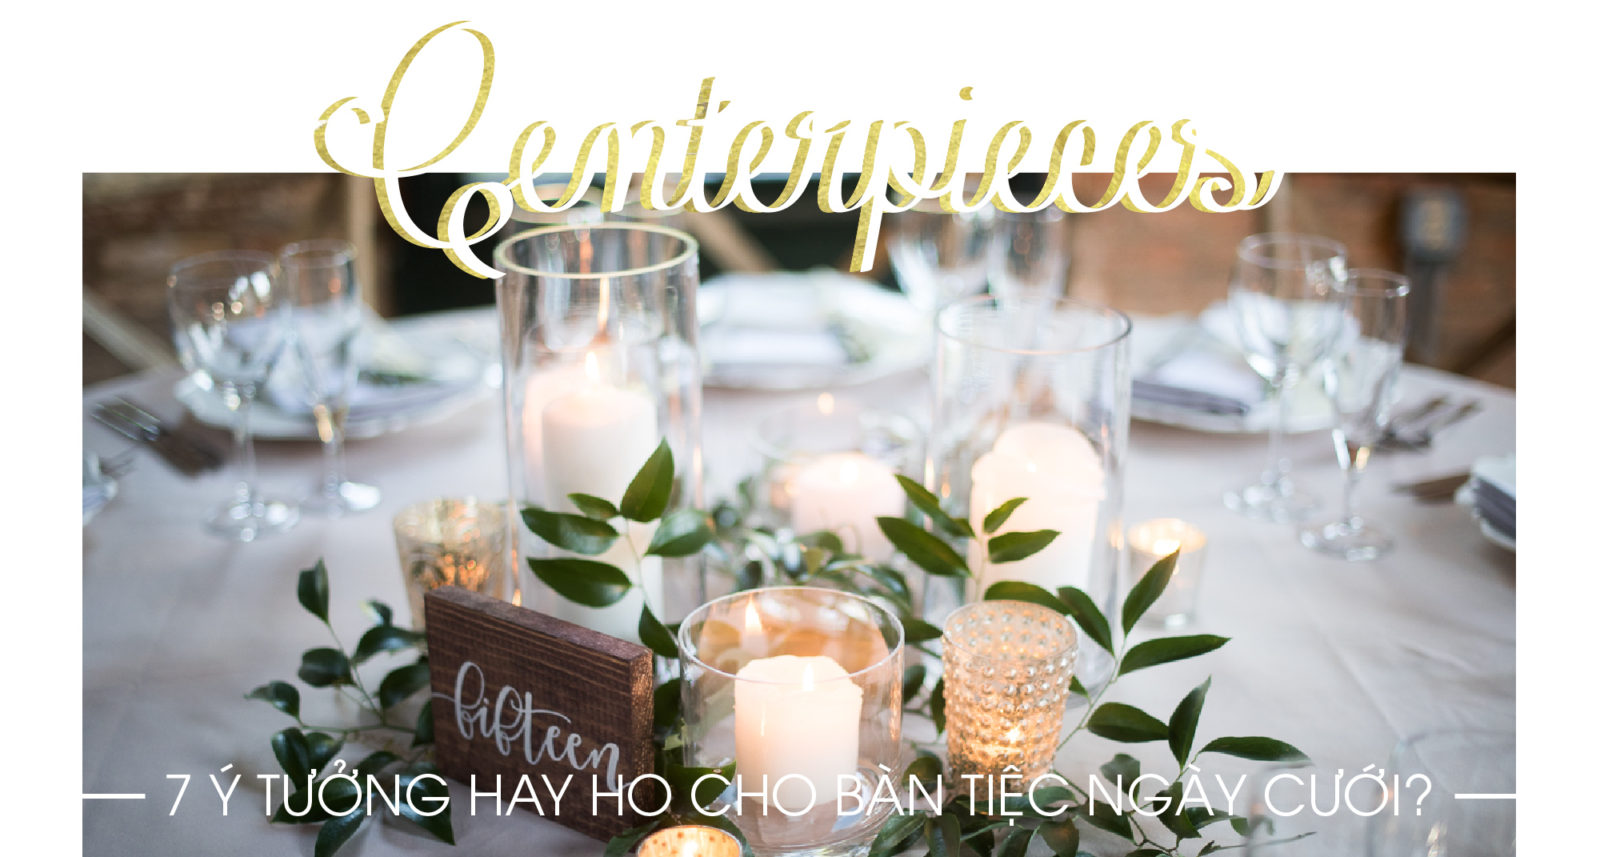 CENTERPIECES – 7 ý tưởng trang trí bàn tiệc ngày cưới - KISS Wedding